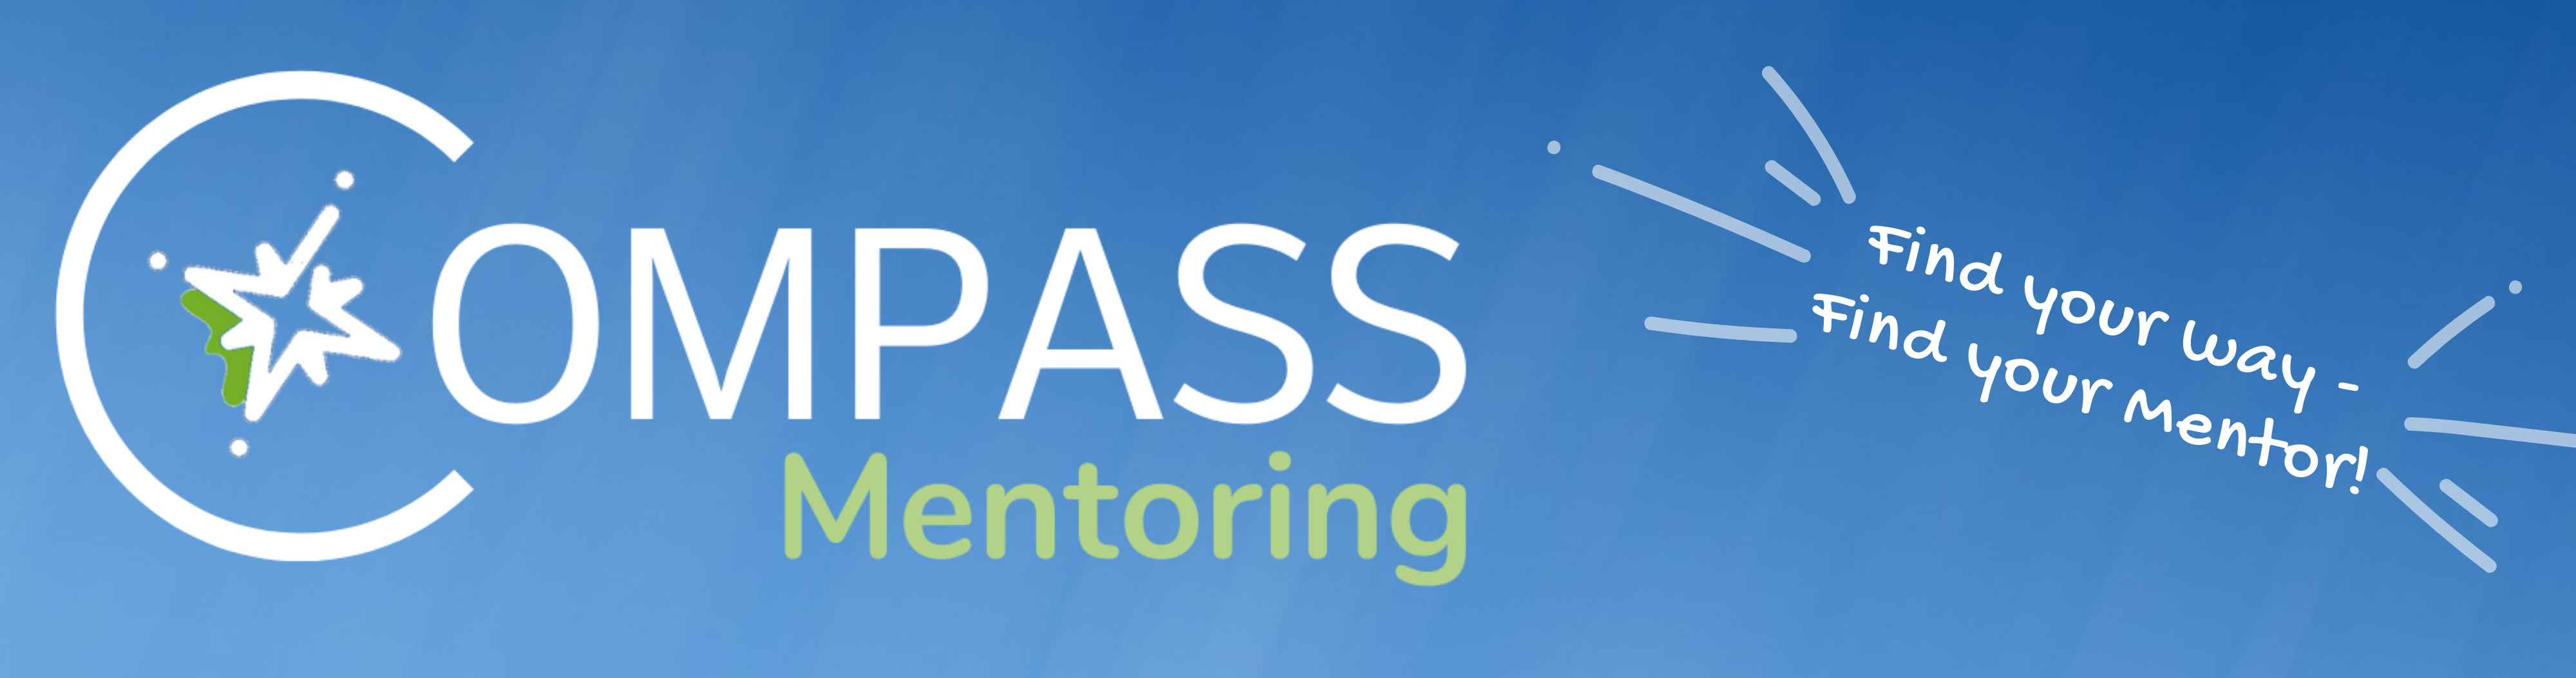 Banner des COMPASS Mentoring Programmes, blauer Hintergrund und weiße Schrift